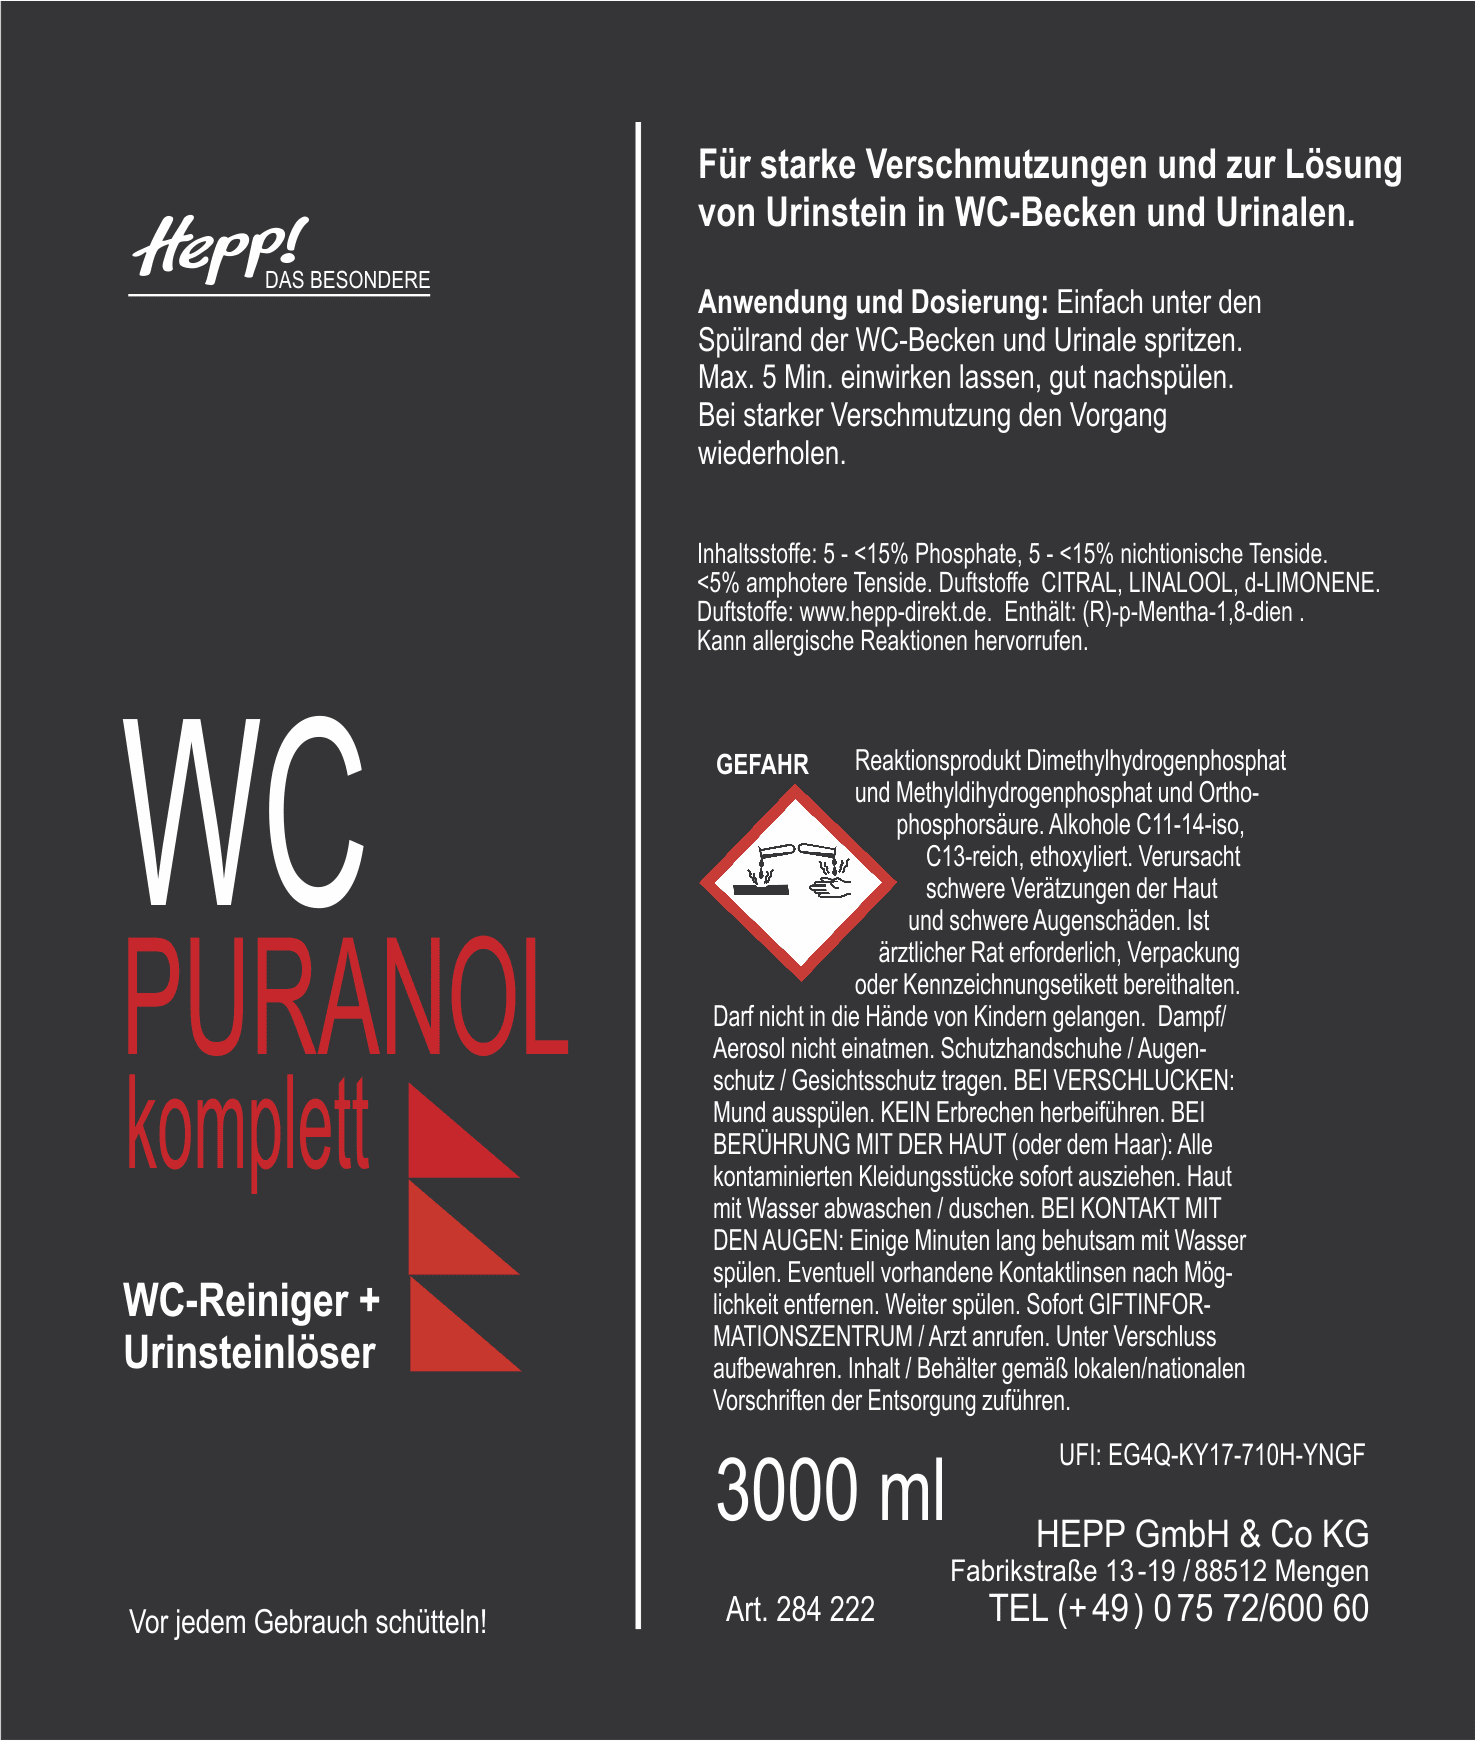 WC-Puranol Komplett (2x750ml)